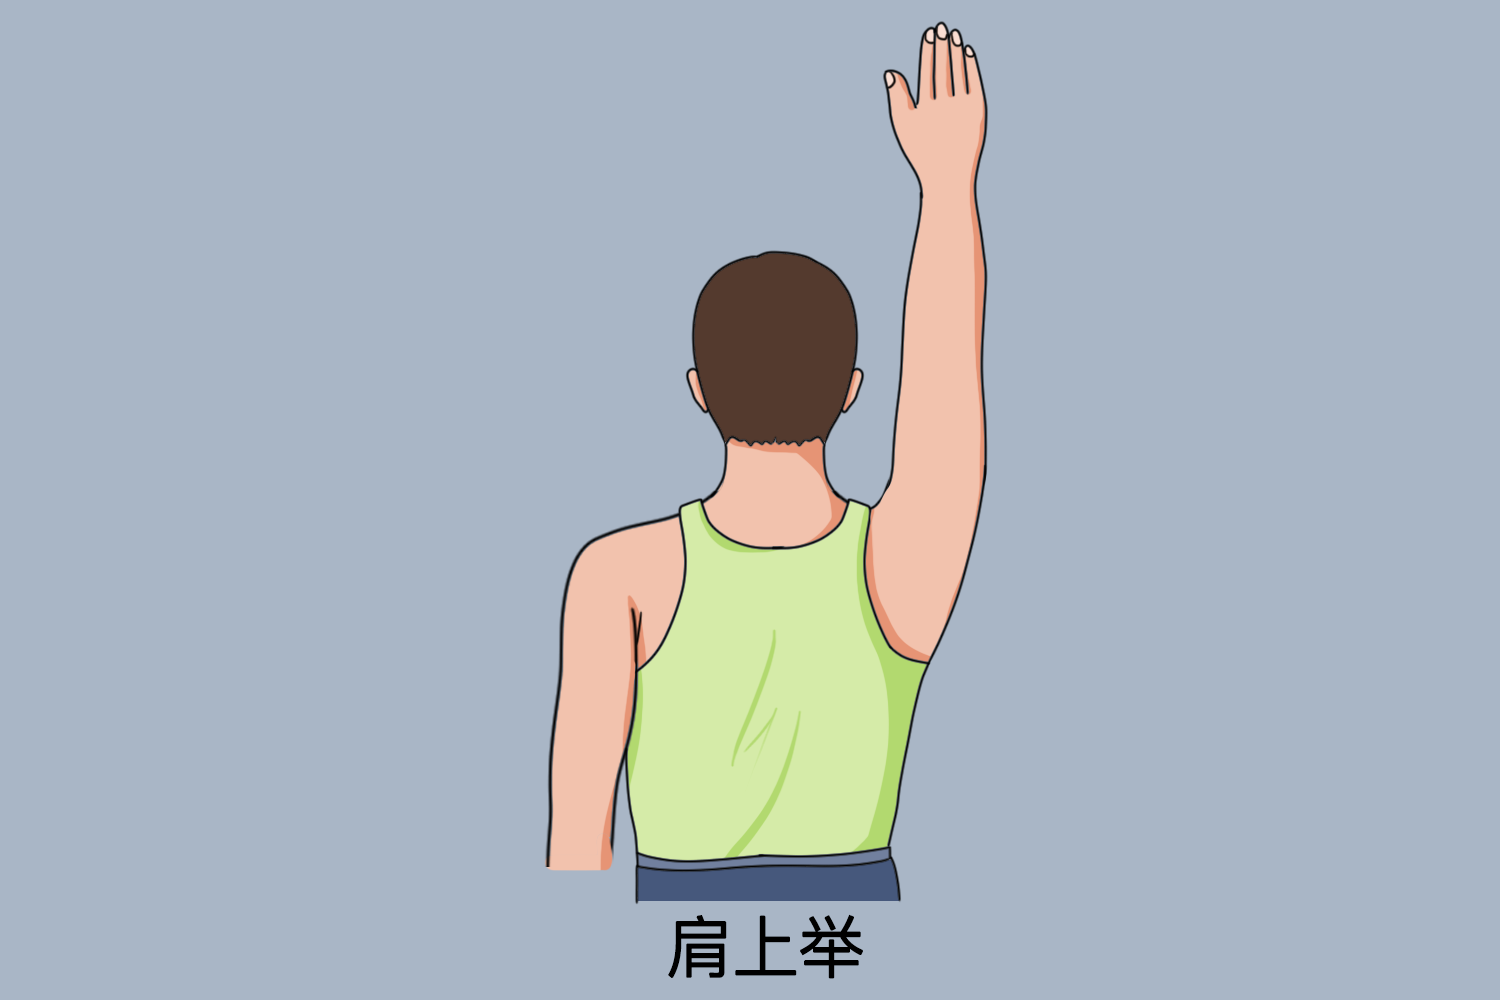 肩关节七种动作示意图